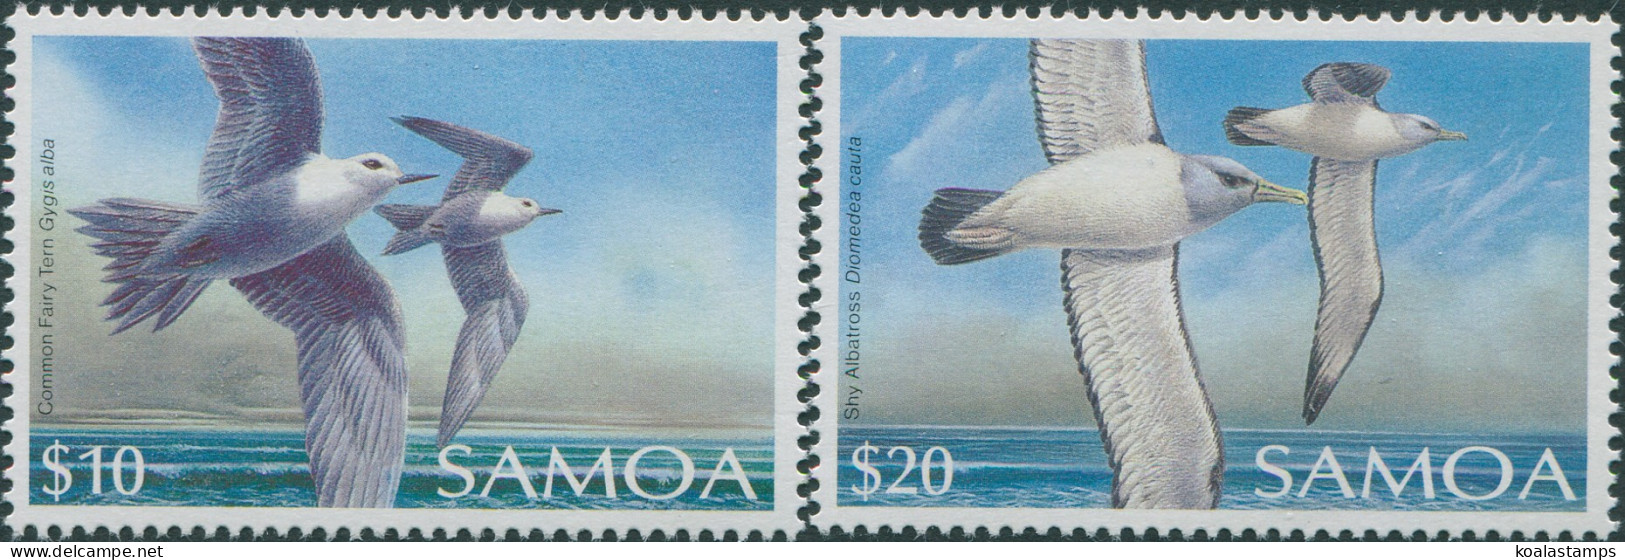 Samoa 1988 SG802-803 Bird Set MNH - Samoa